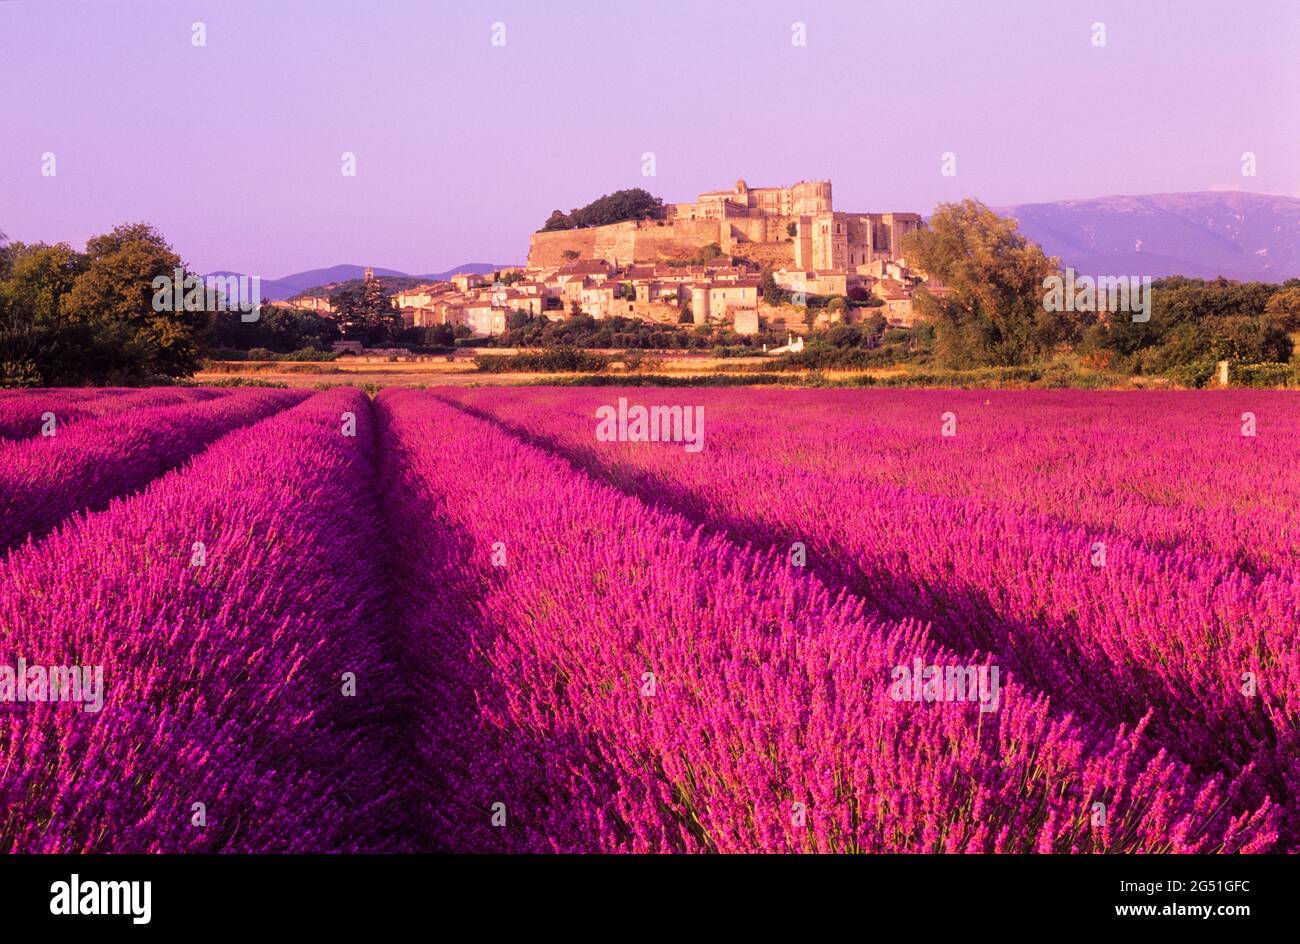 Paisaje con campo de lavanda púrpura, Grignan, Provenza, Francia Foto de stock